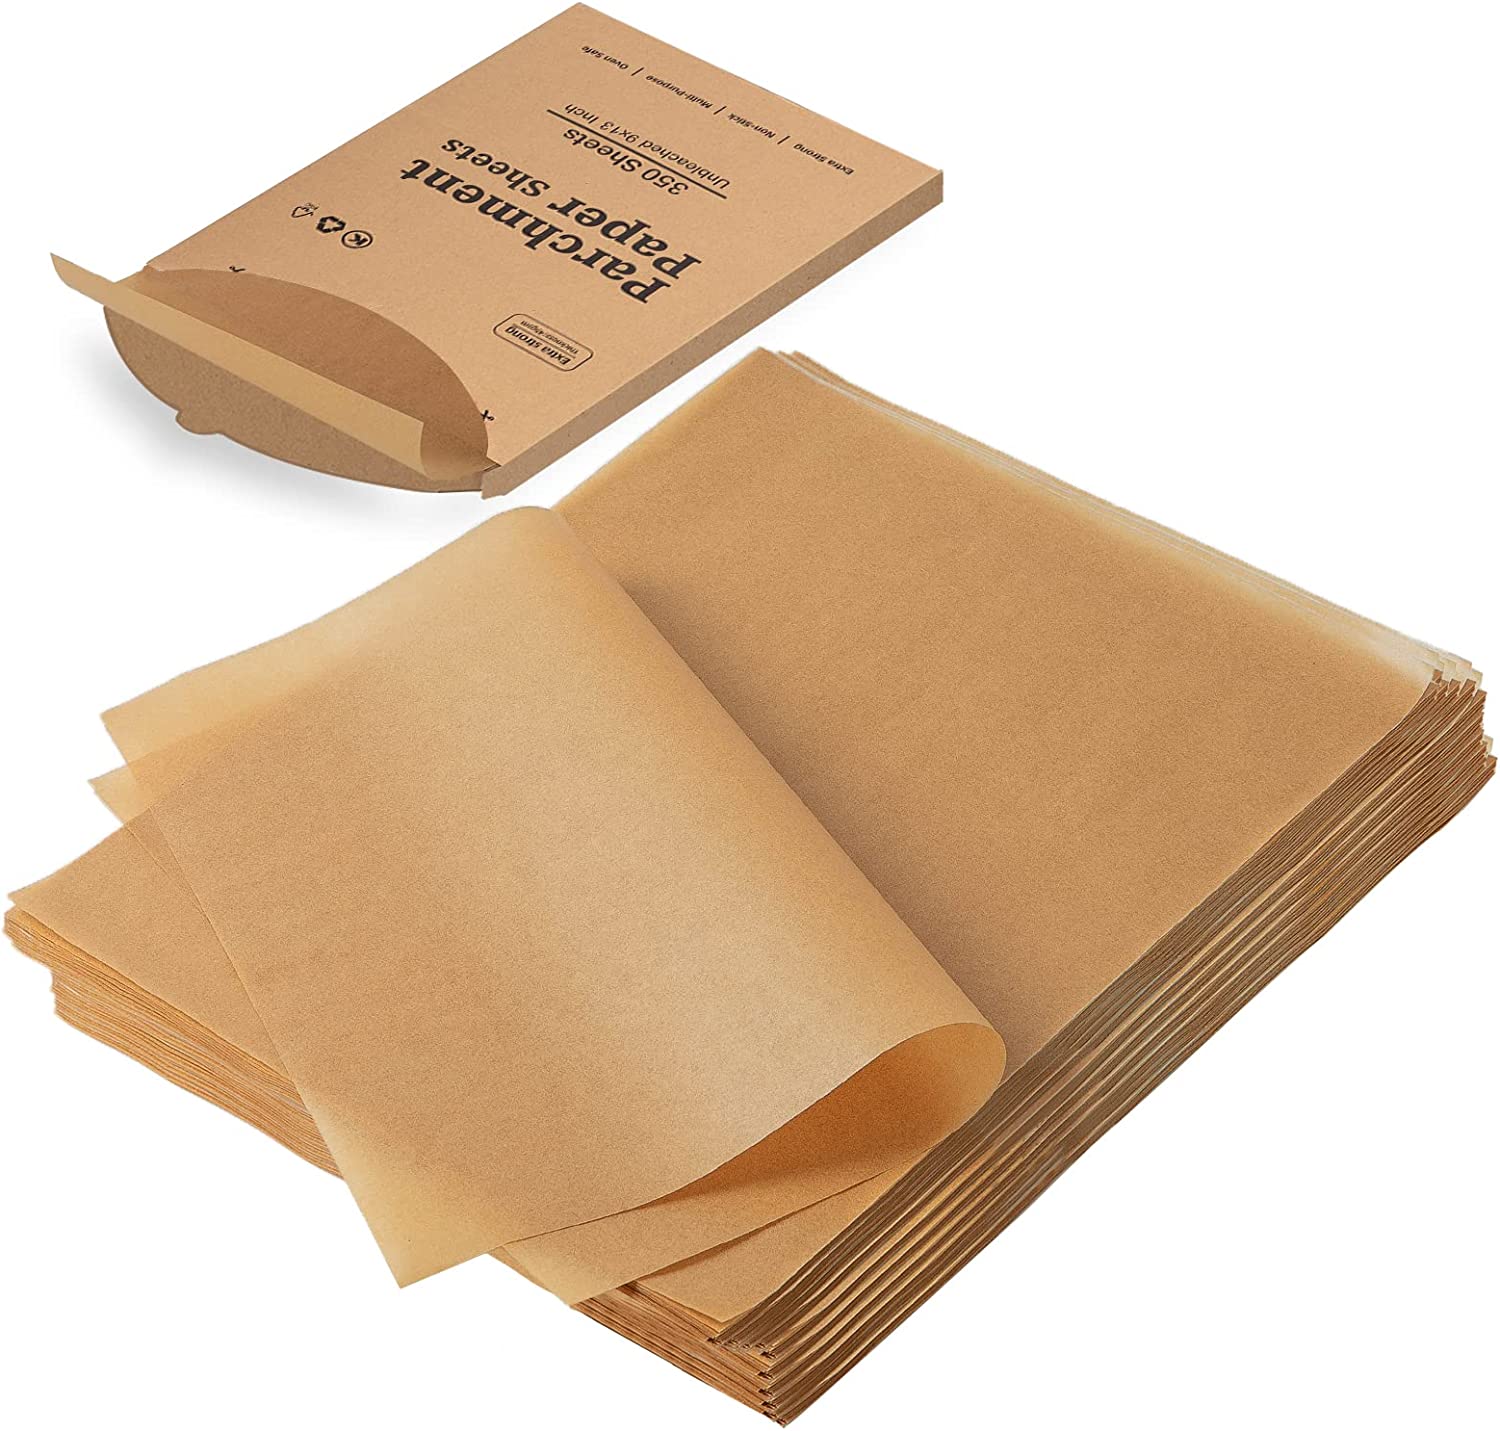 Katbite 200Pcs 9x13 inch Heavy Duty Unbleached Parchment Paper